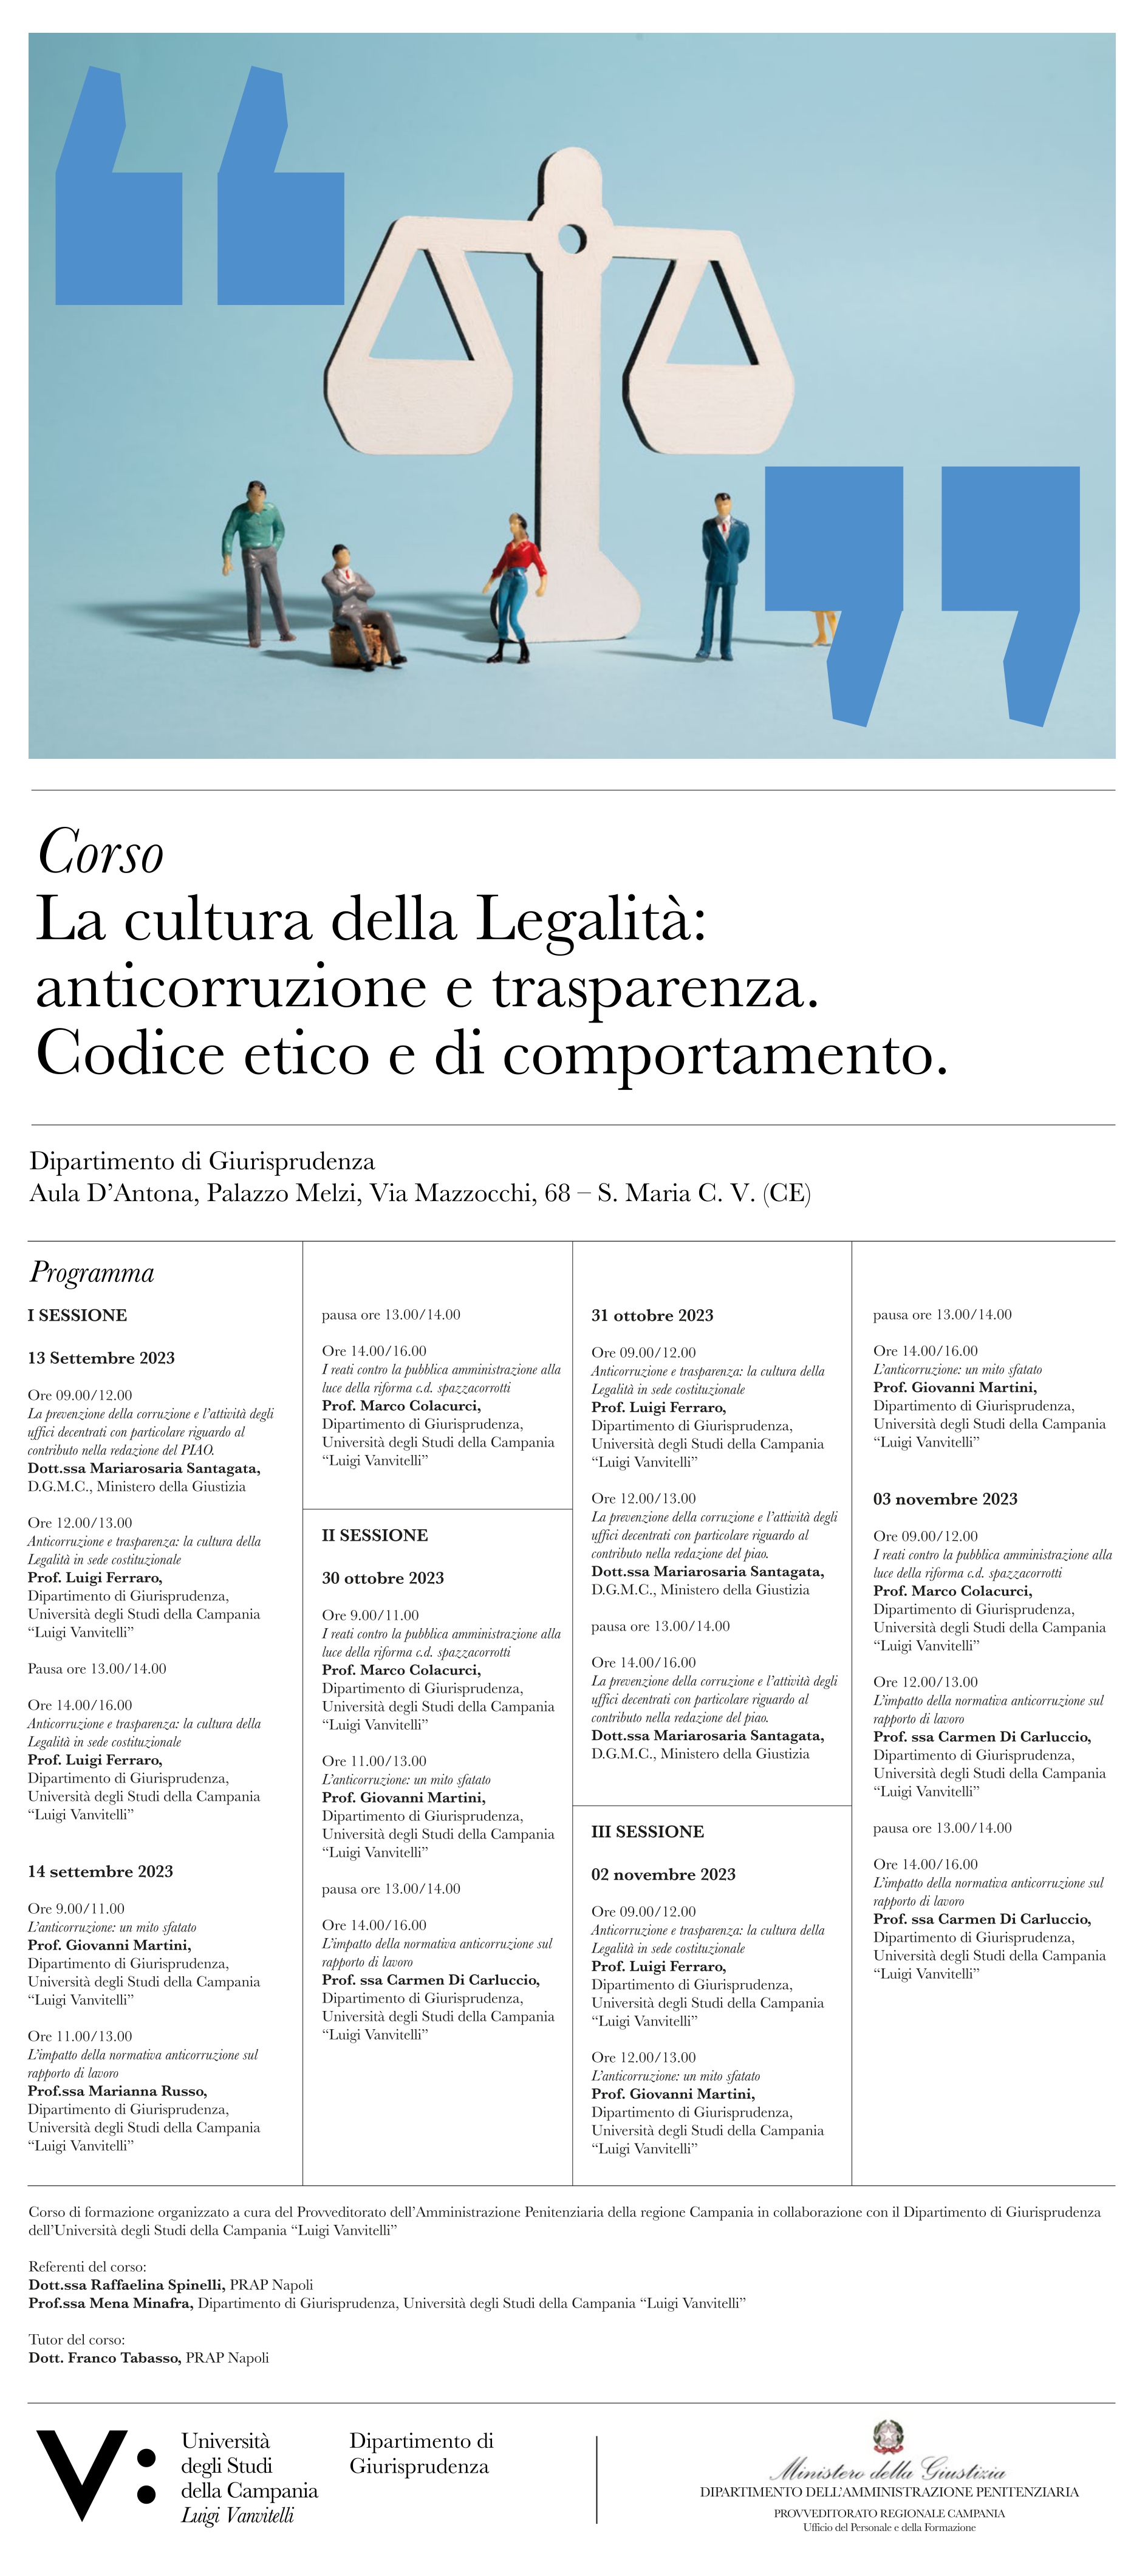 Corso locandina page 0001